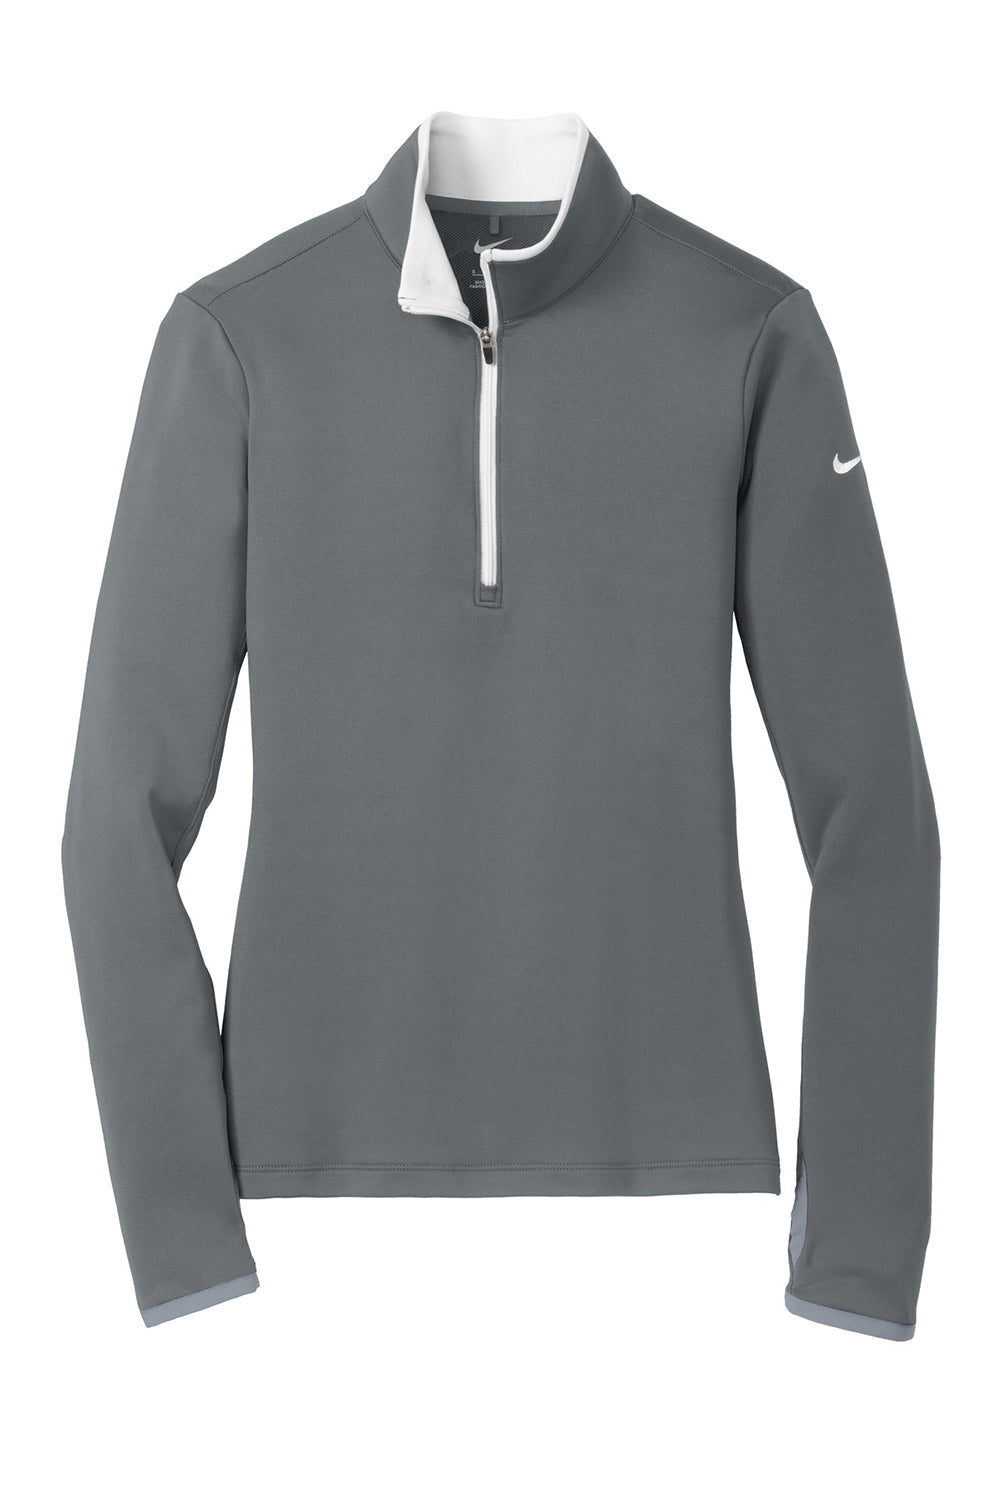 Nike 779796 Womens Dri-Fit Moisture Wicking 1/4 Zip Sweatshirt Dark Grey/White Flat Front